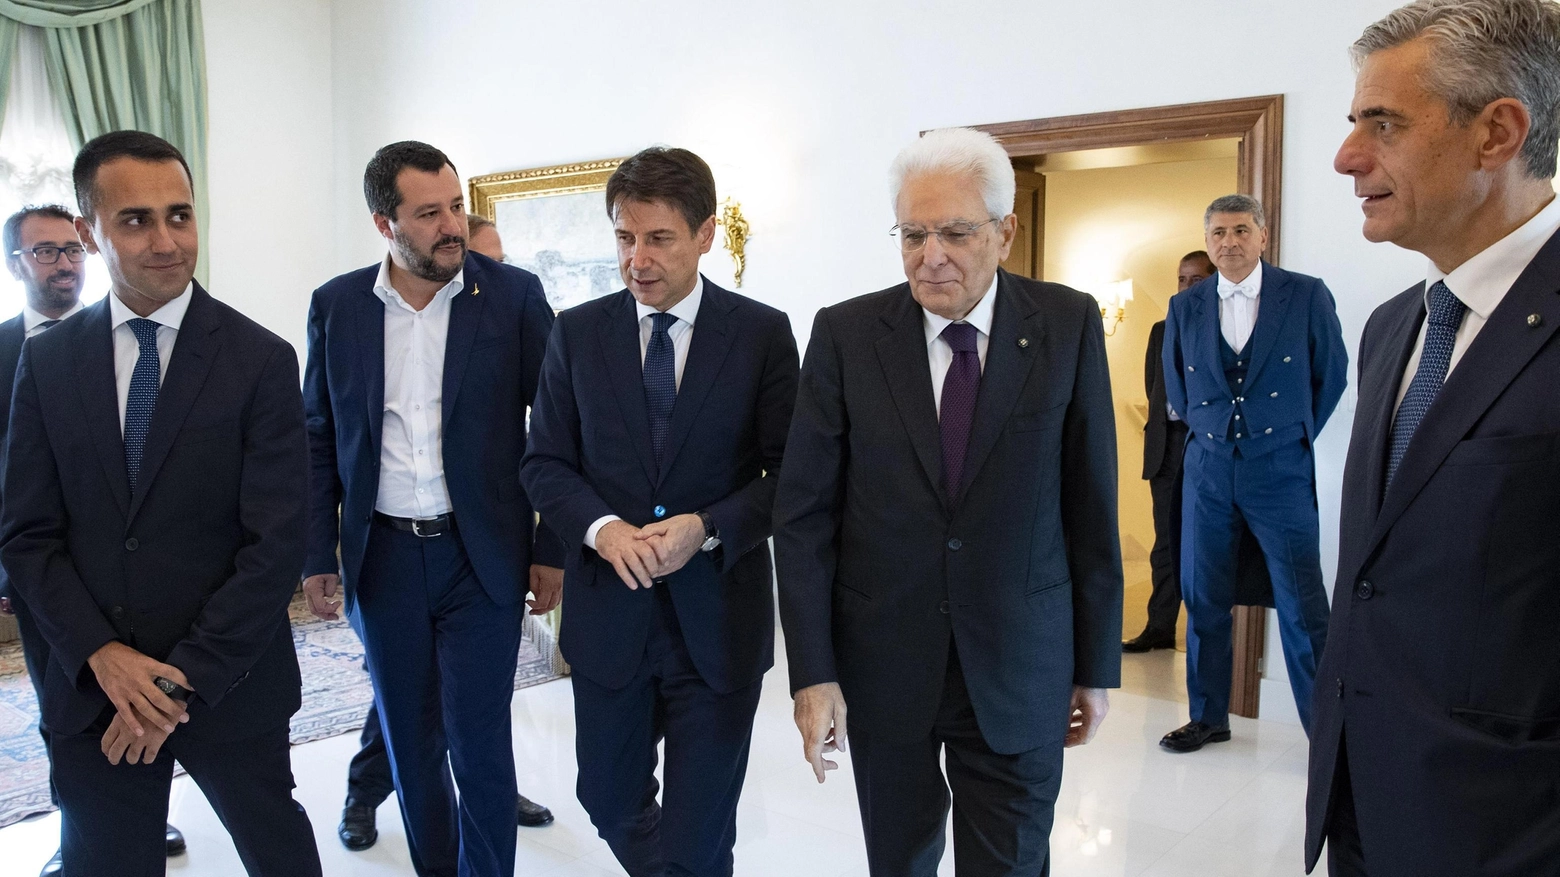 Di Maio, Salvini, Conte e Mattarella in una foto d'archivio (Ansa)